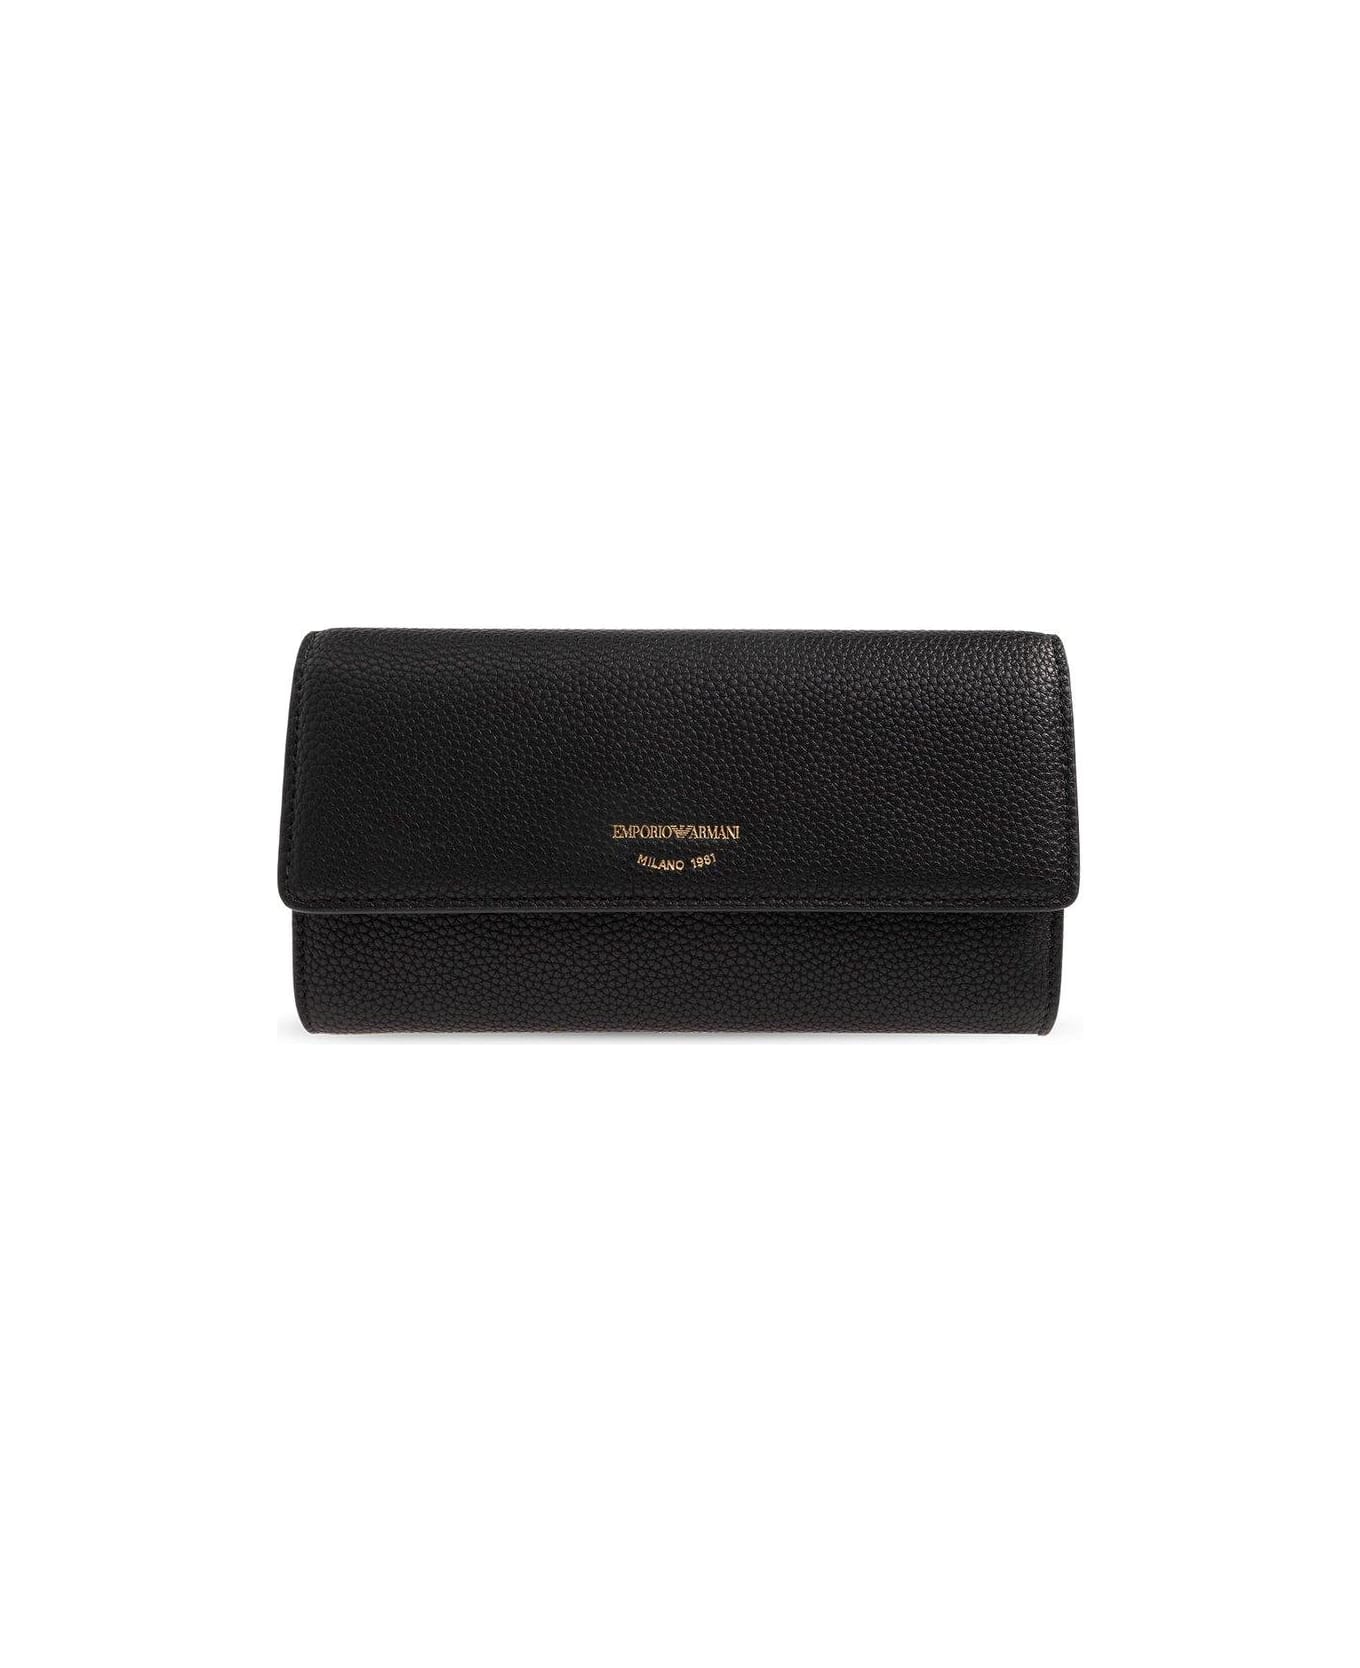 Emporio Armani Wallet With Logo - Black